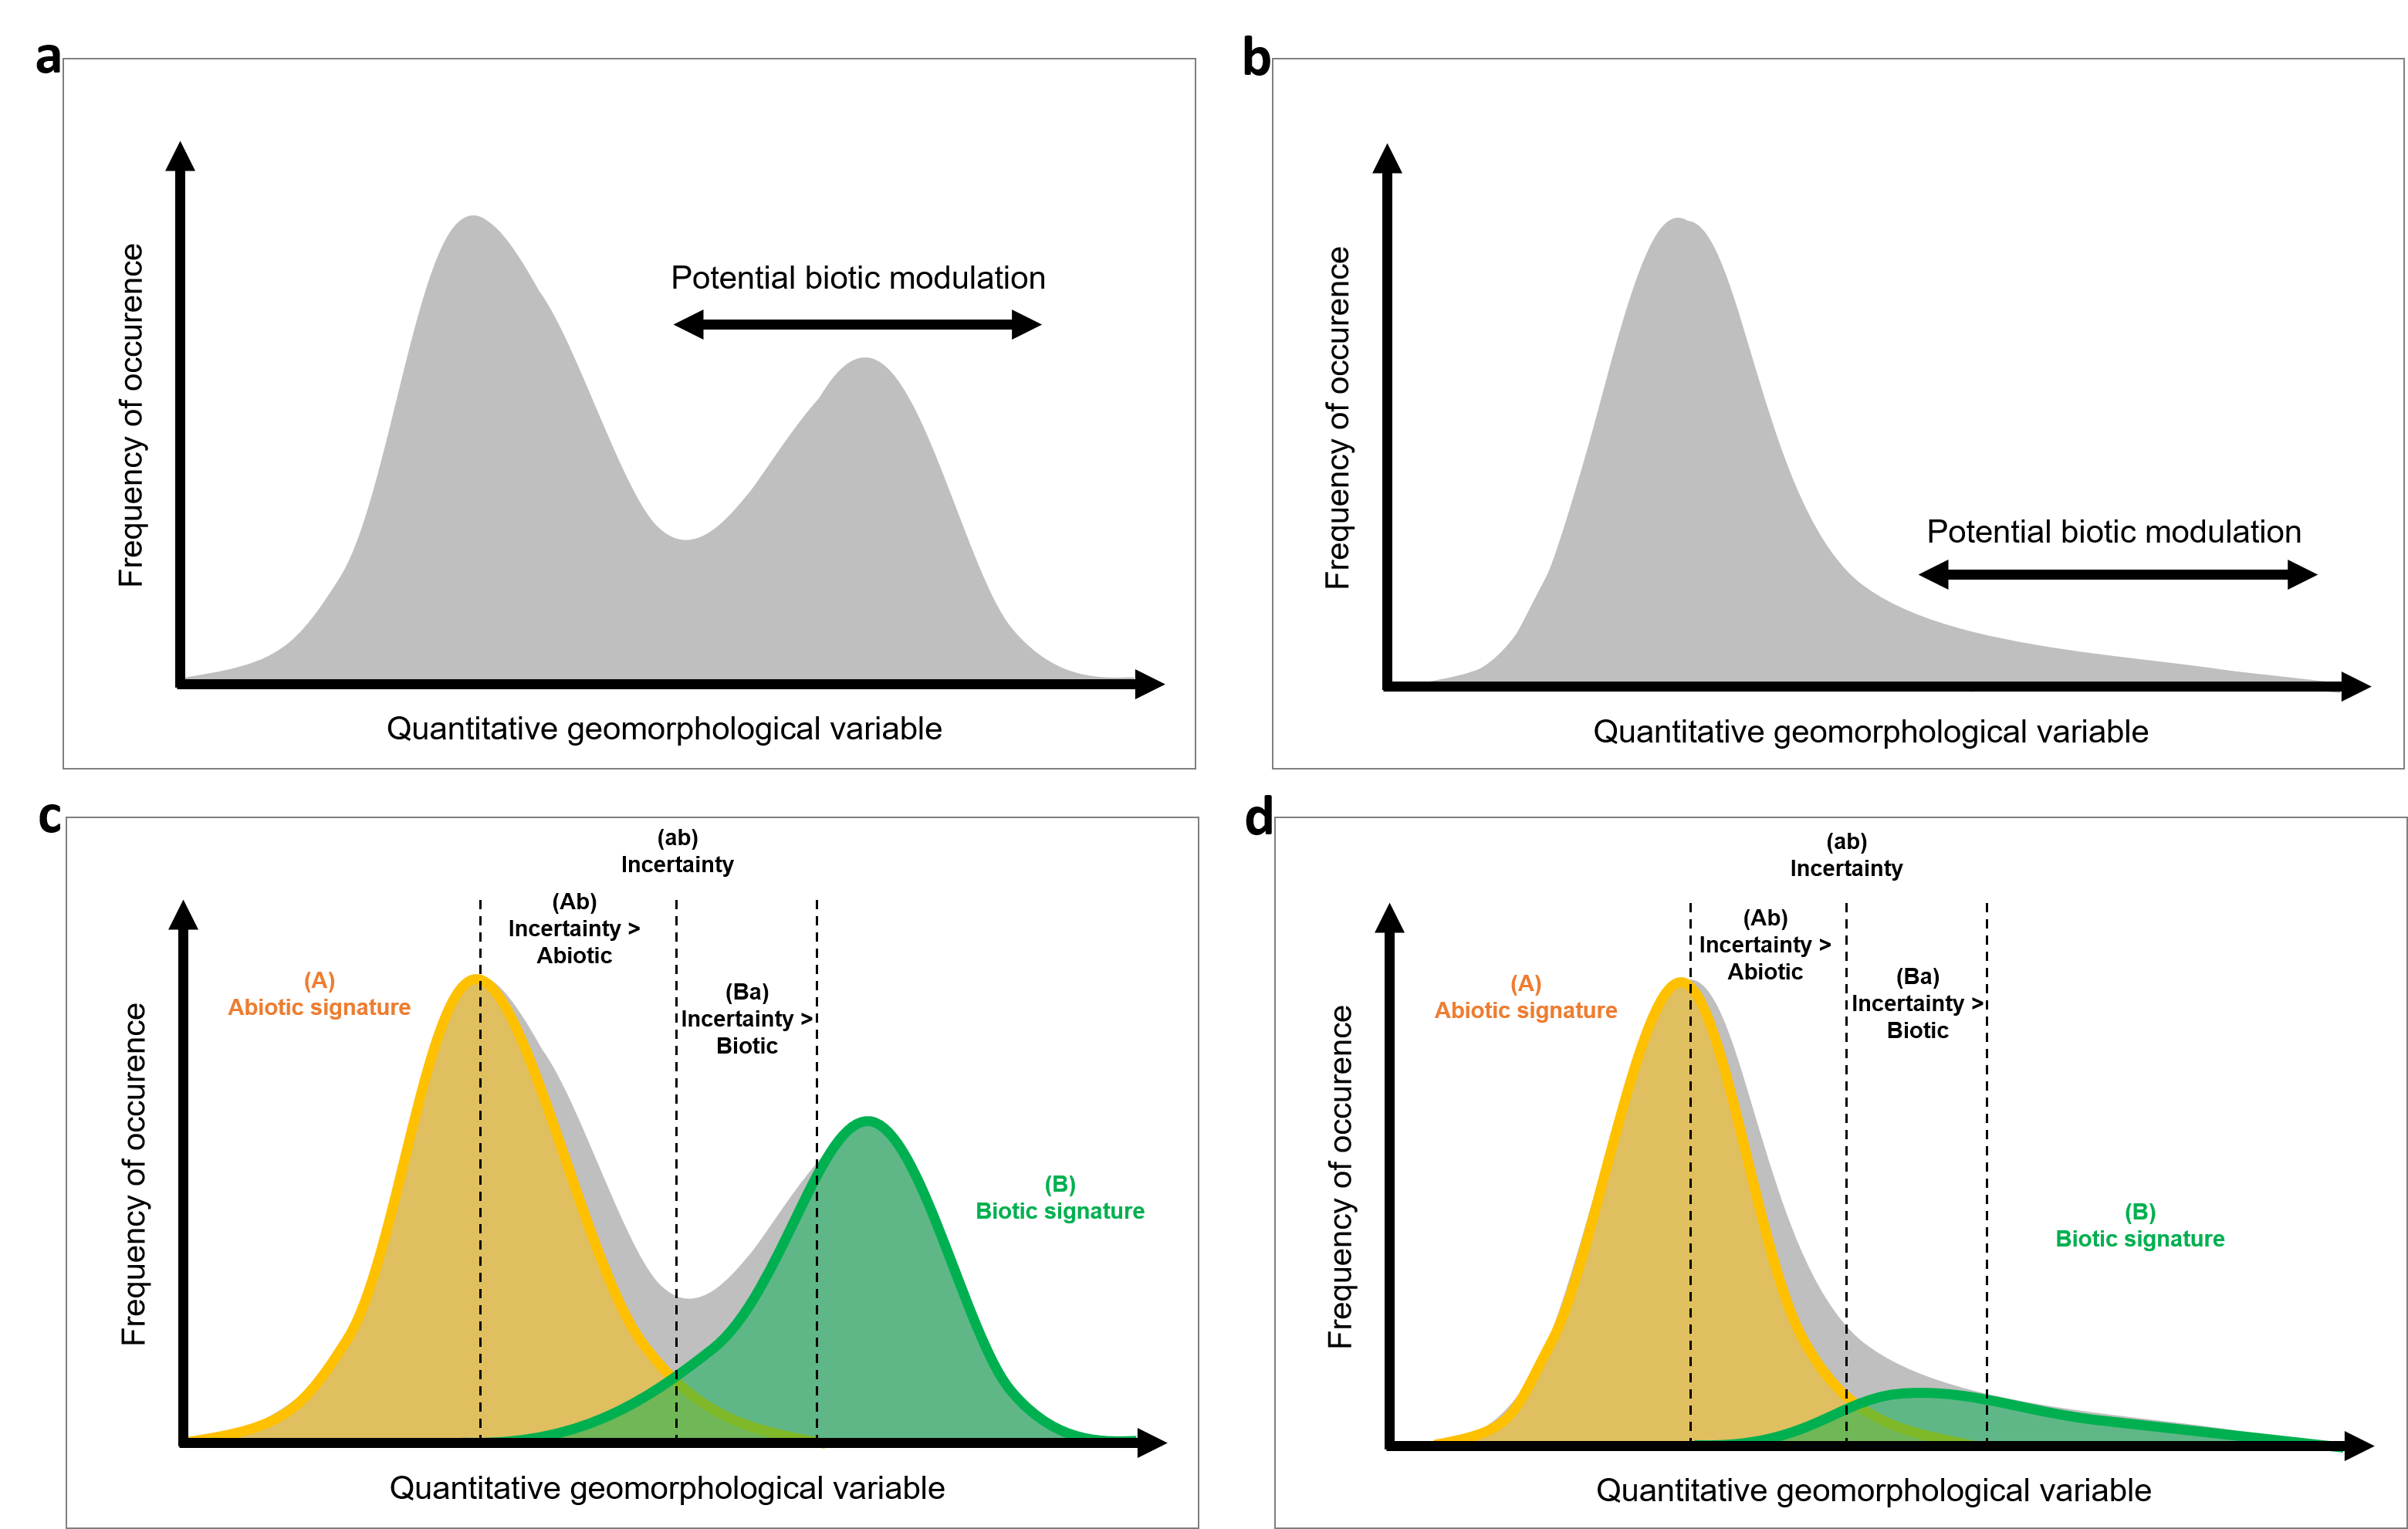 Deux histogrammes de fréquence hypothétiques des propriétés géomorphologiques liées aux signatures abiotique et biotique